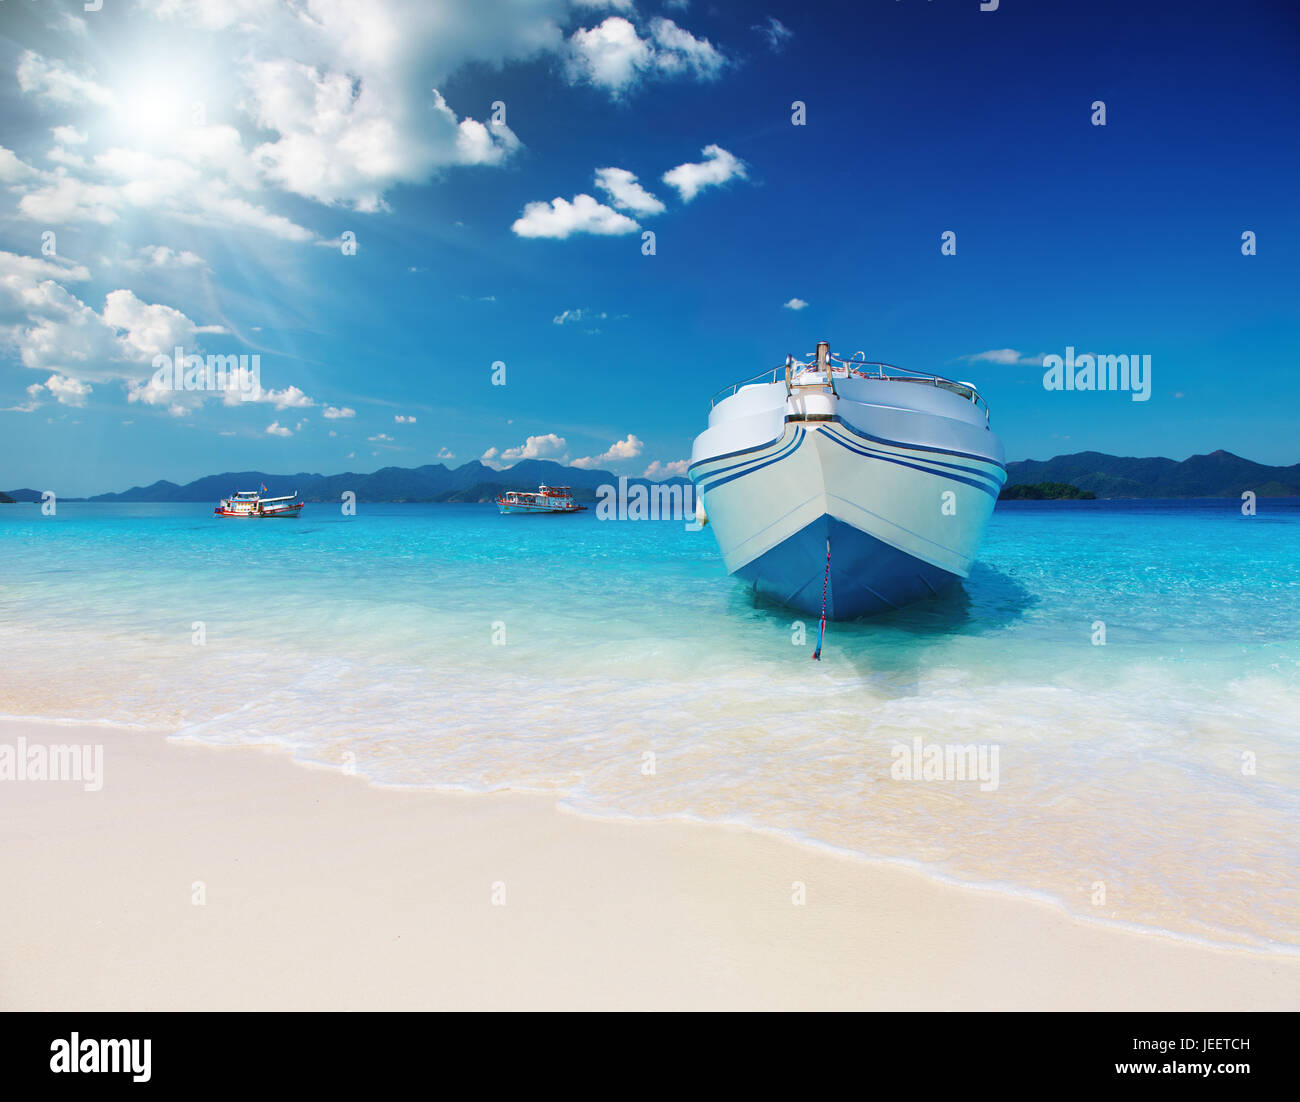 Spiaggia tropicale con sabbia bianca e mare azzurro Foto Stock